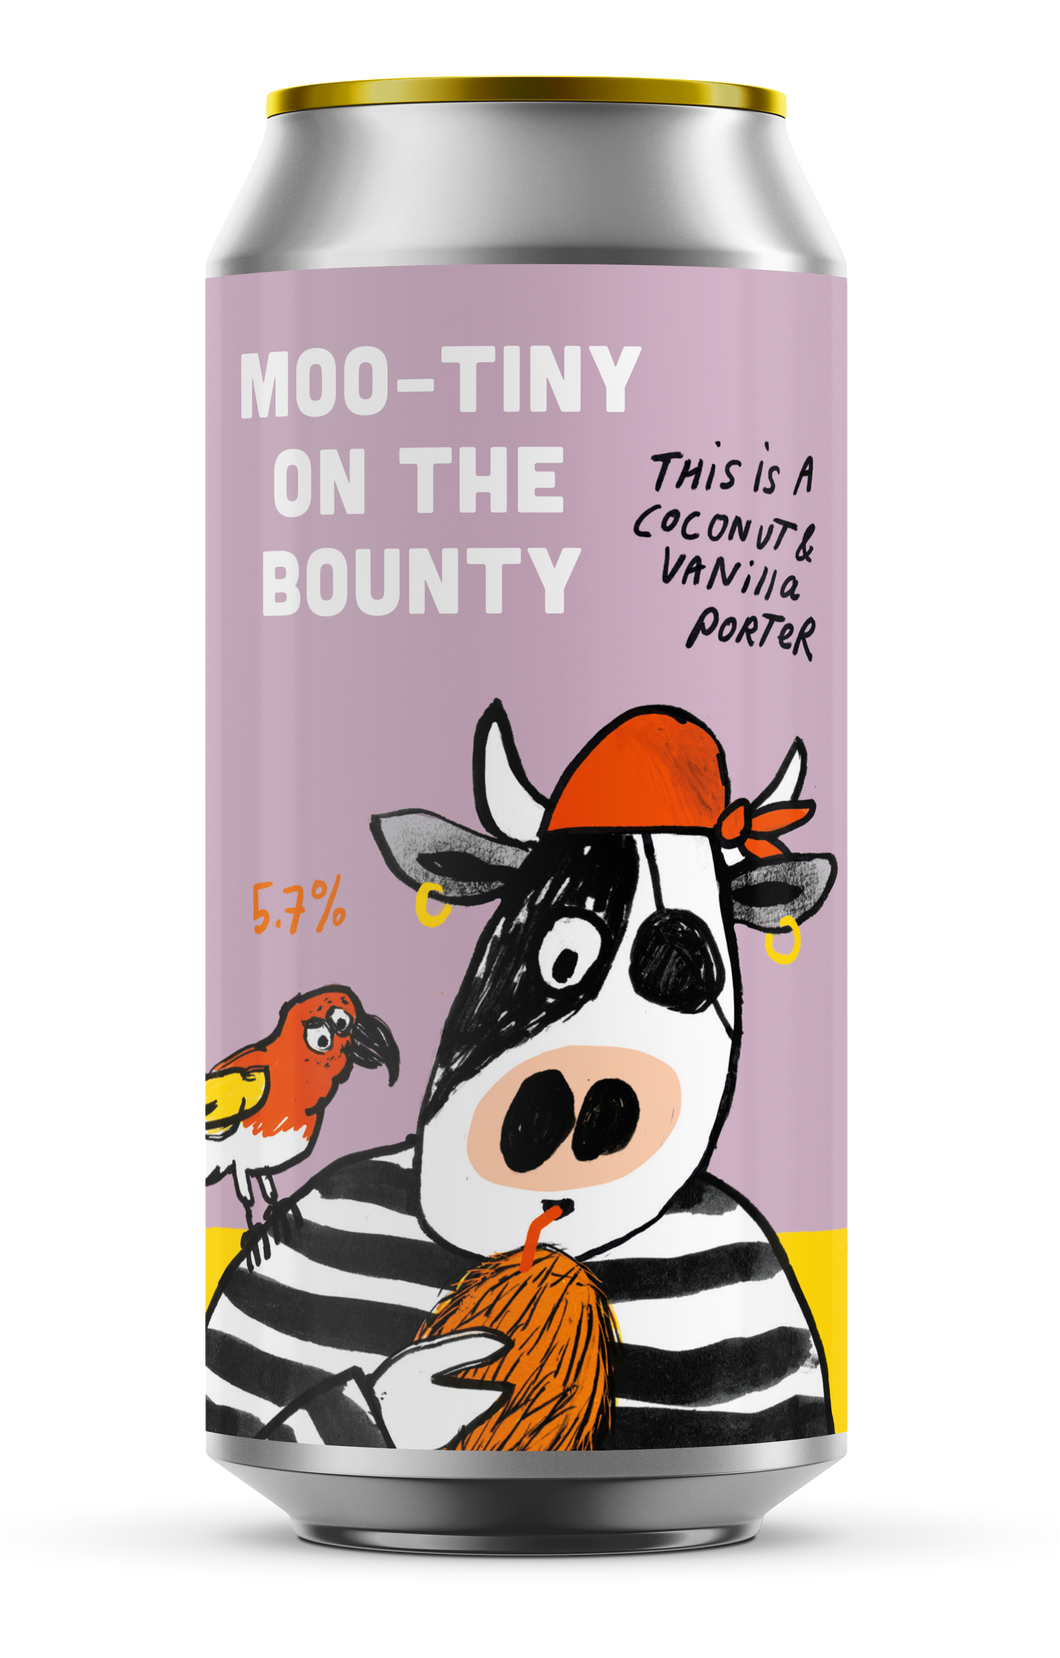 Moo-tiny on the Bounty -  Coconut and Vanilla Porter 5.7%